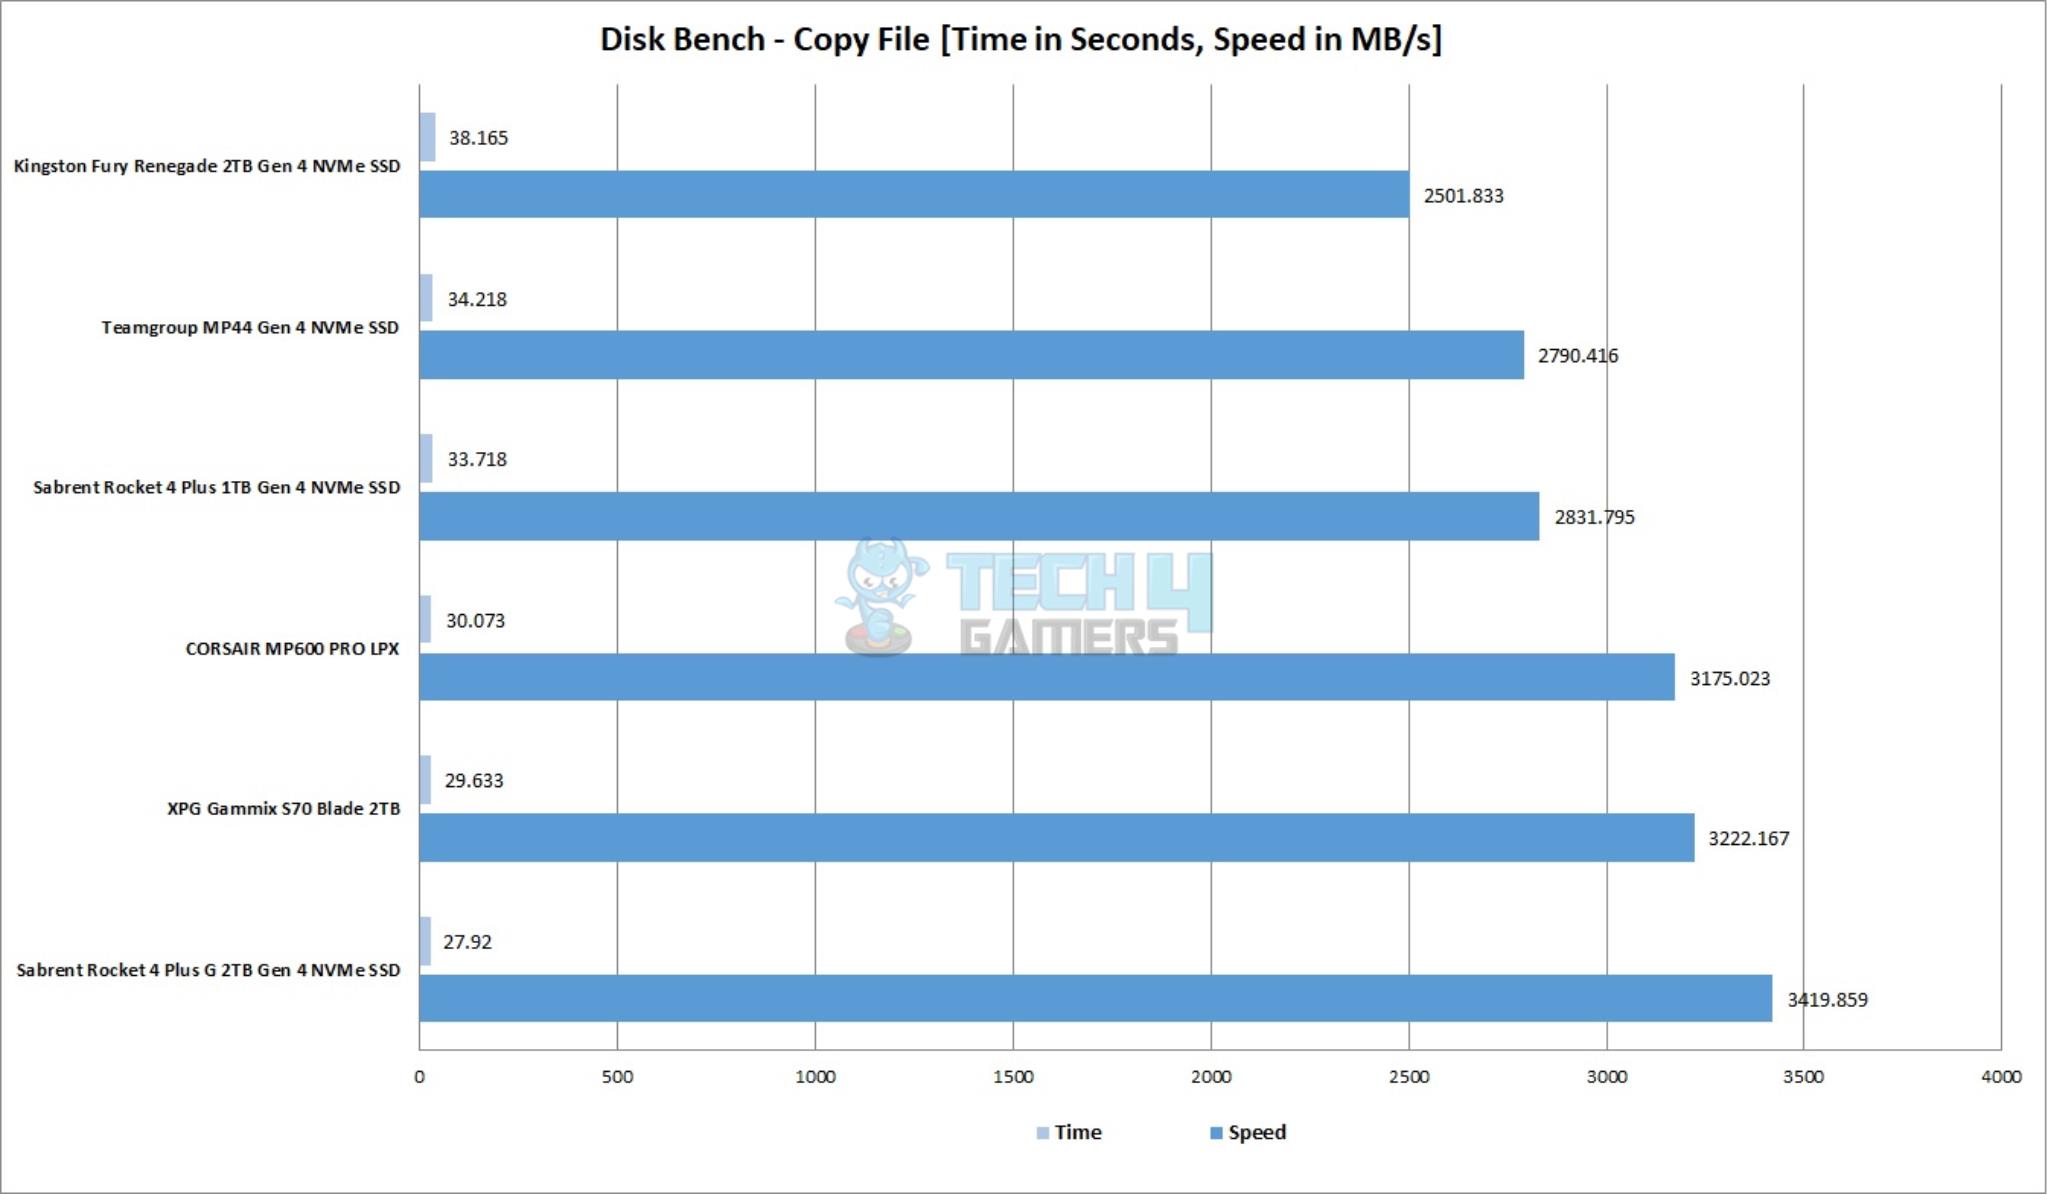 CORSAIR MP600 PRO LPX 2TB NVMe SSD — Disk Bench Copy File